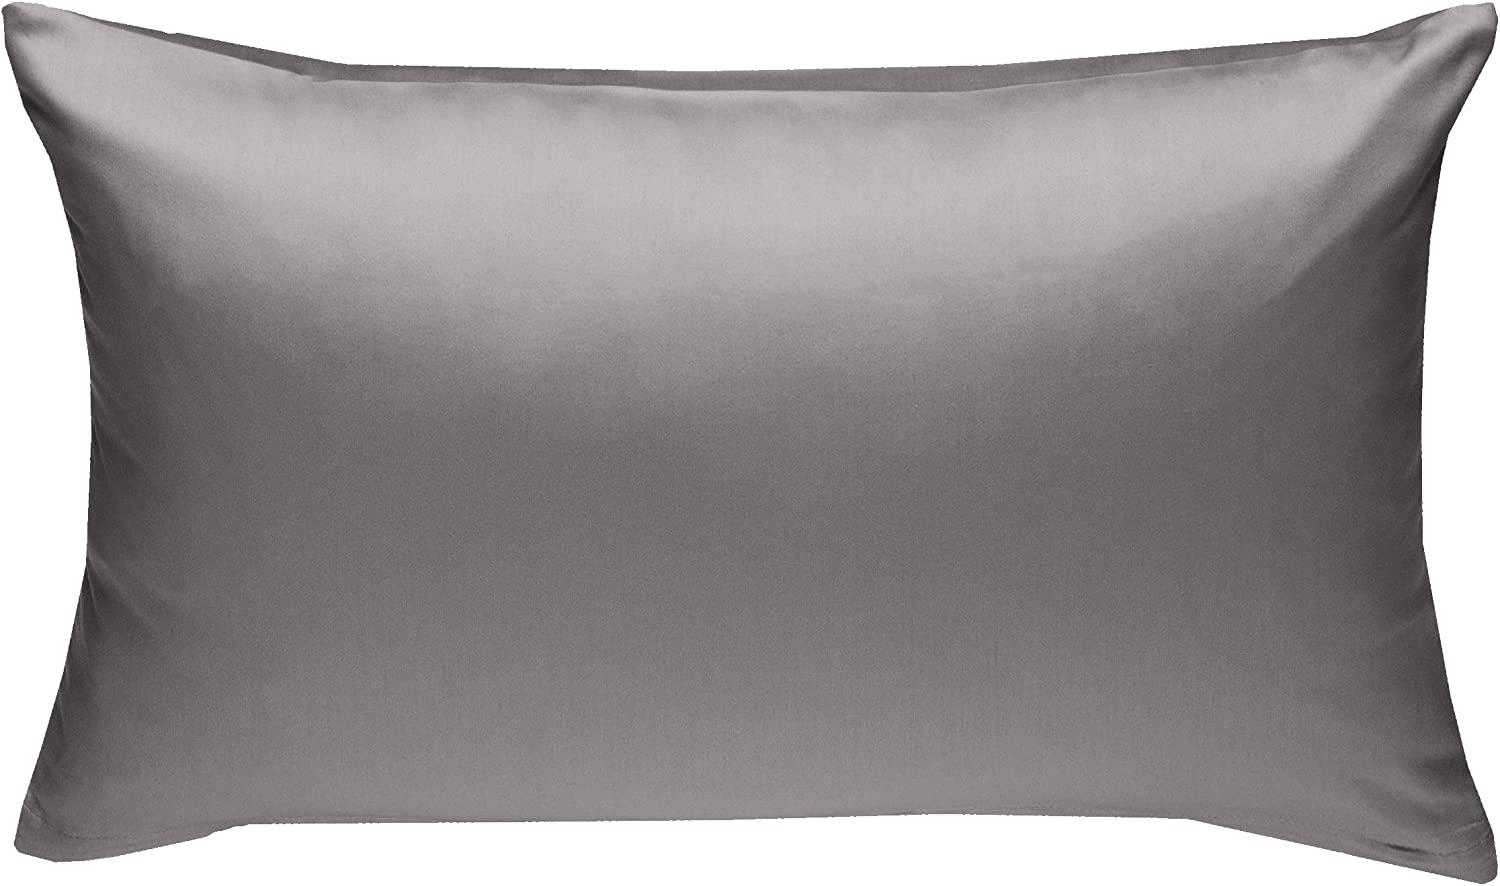 Bettwaesche-mit-Stil Mako-Satin / Baumwollsatin Bettwäsche uni / einfarbig dunkelgrau Kissenbezug 60x80 cm Bild 1